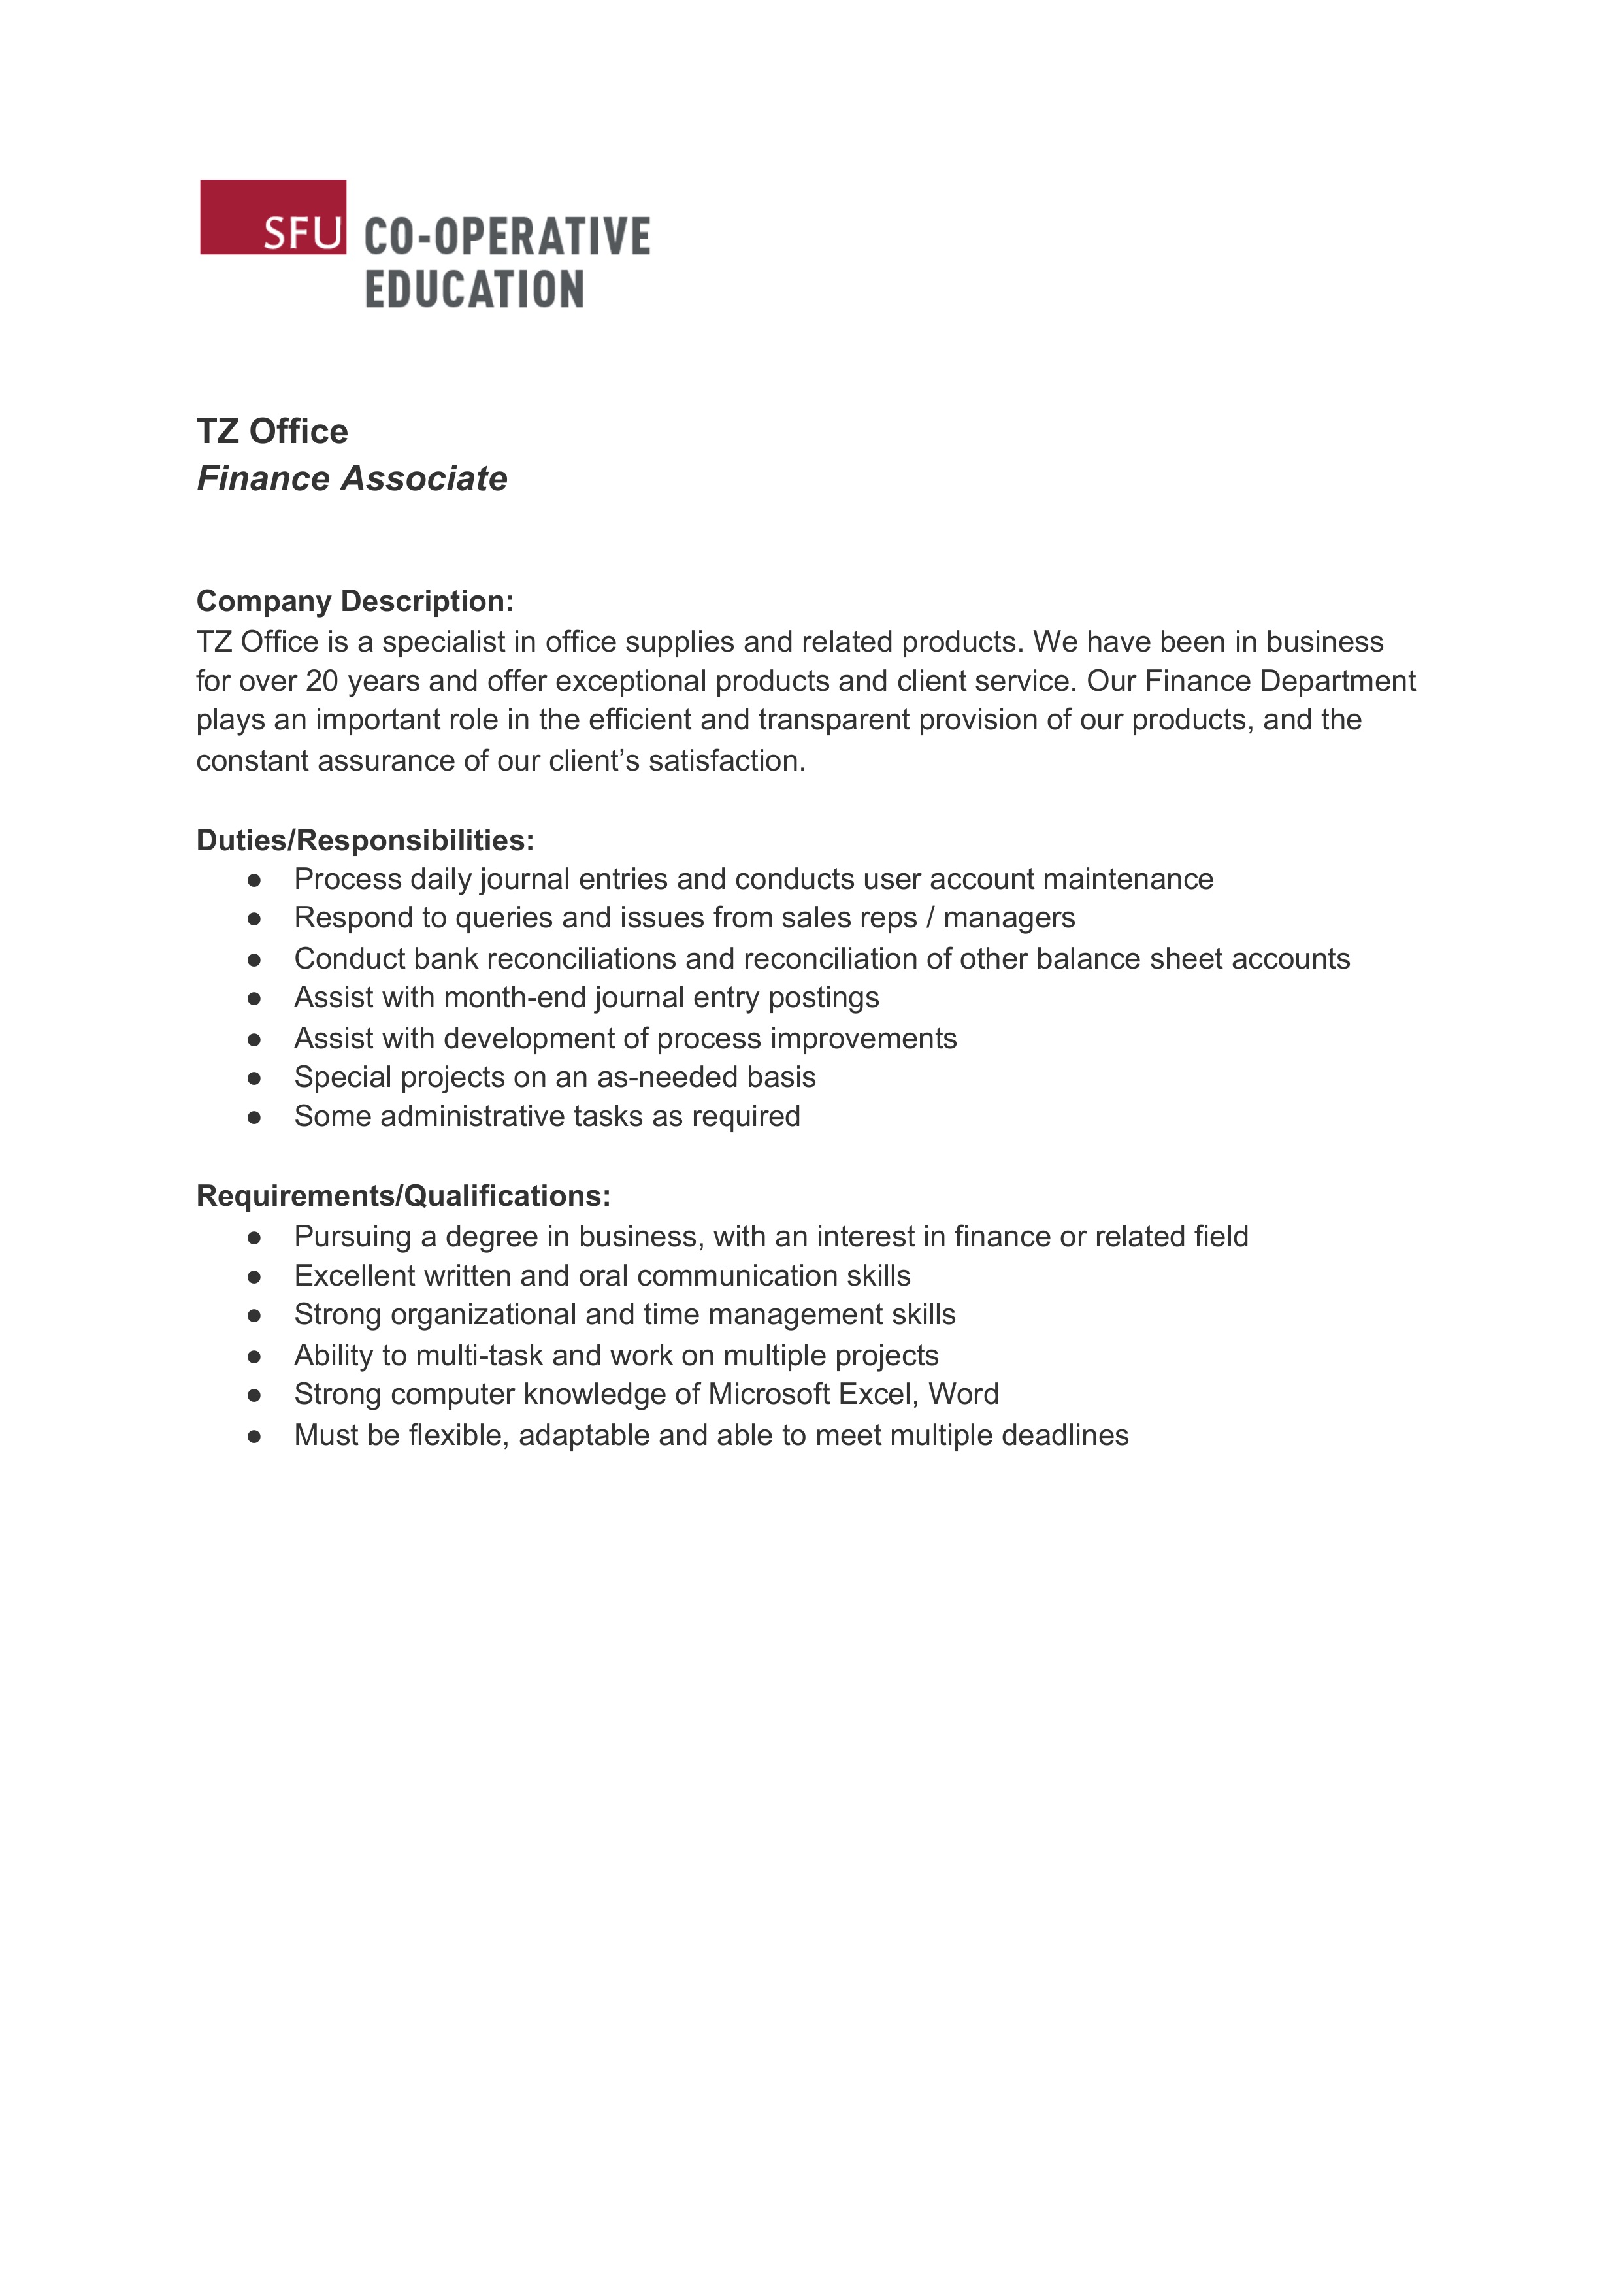 Finance associate job description